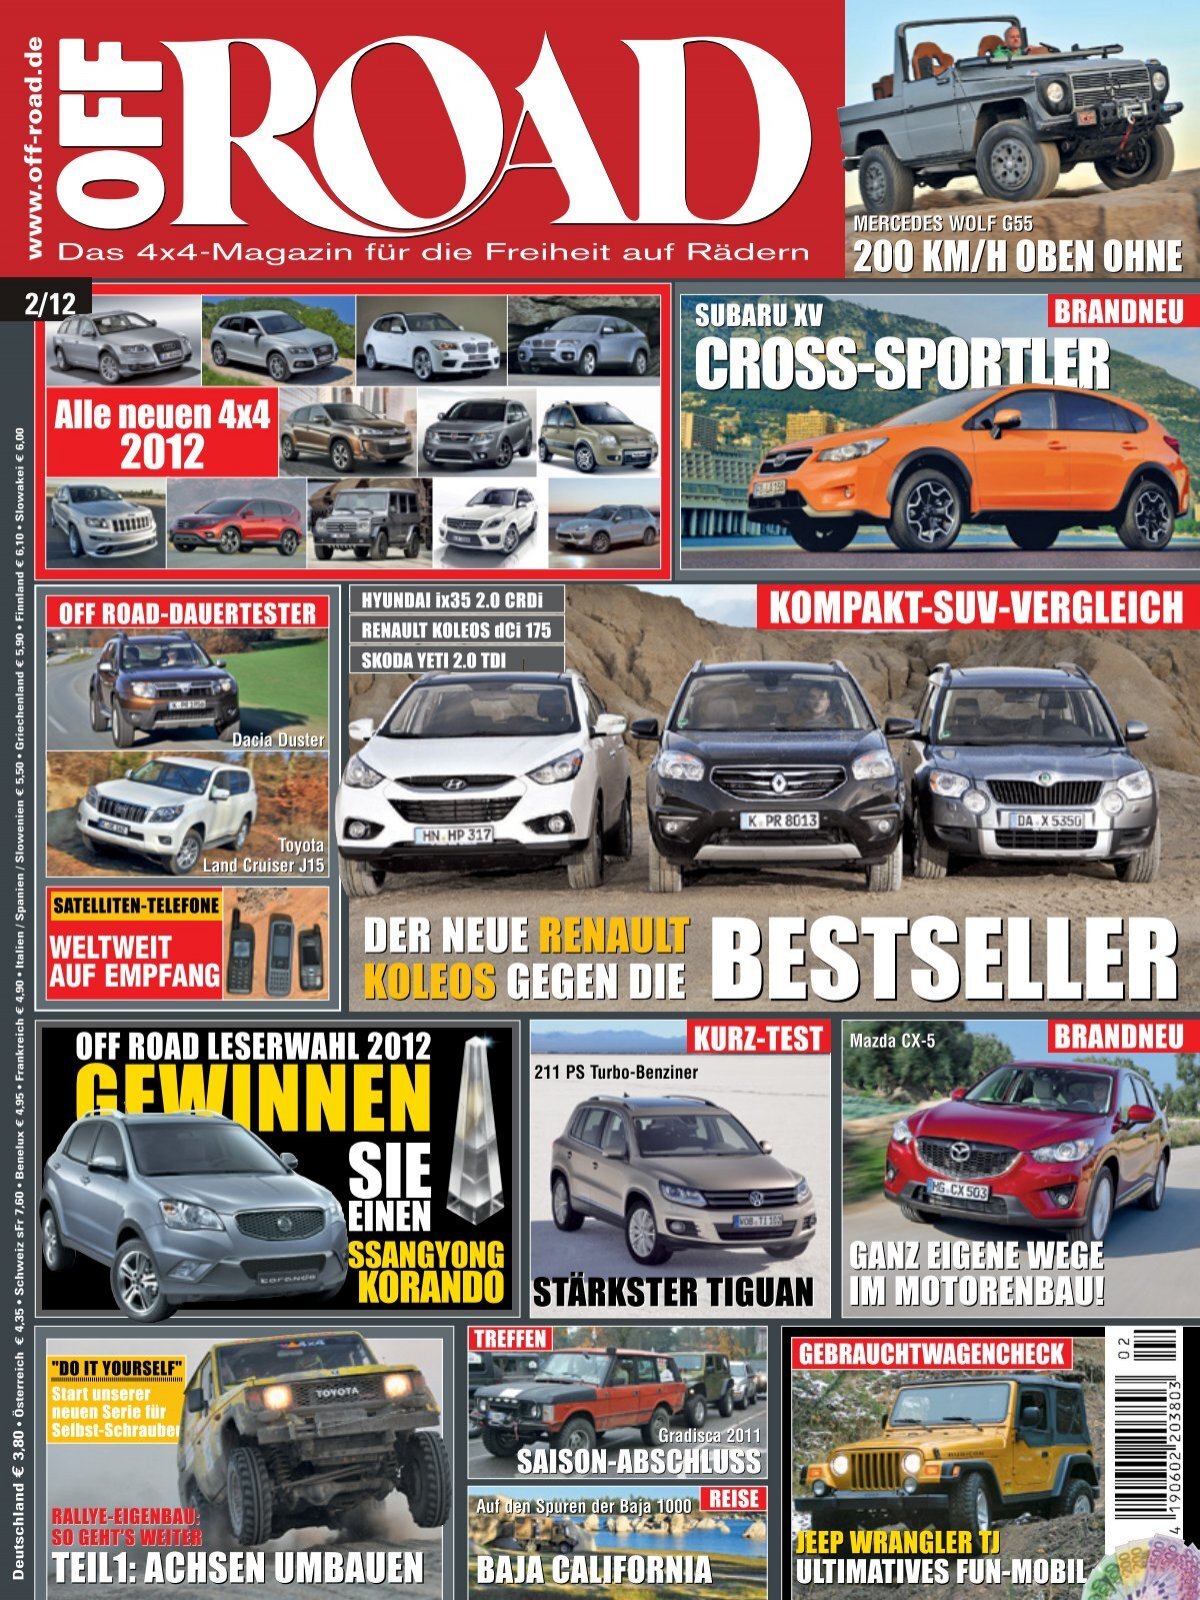 OFF ROAD Der neue Renault Koleos gegen die Bestseller (Vorschau)